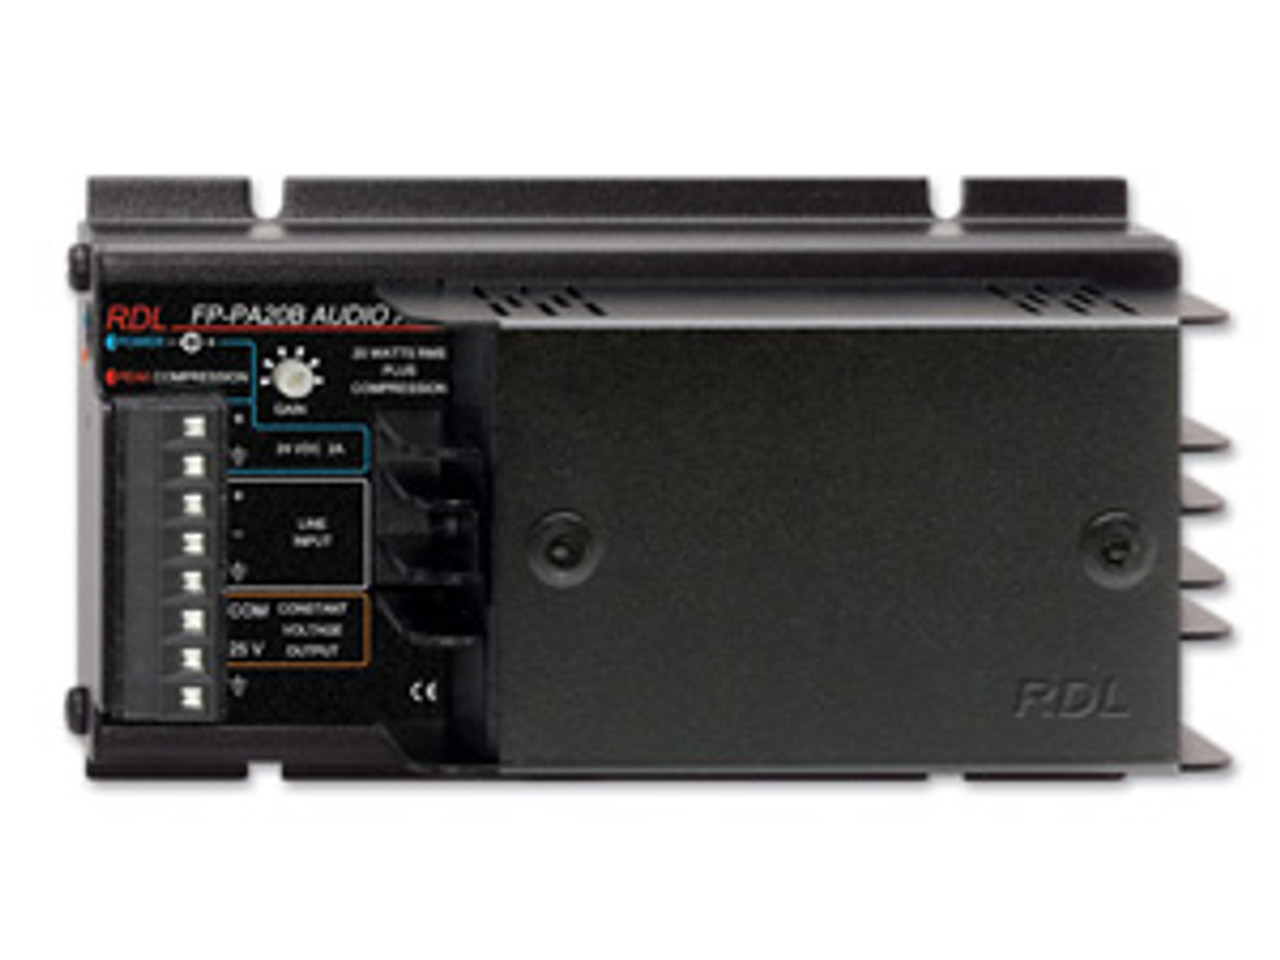 RDL FP-PA20B 20 W Mono Audio Amplifier (FP-PA20B)